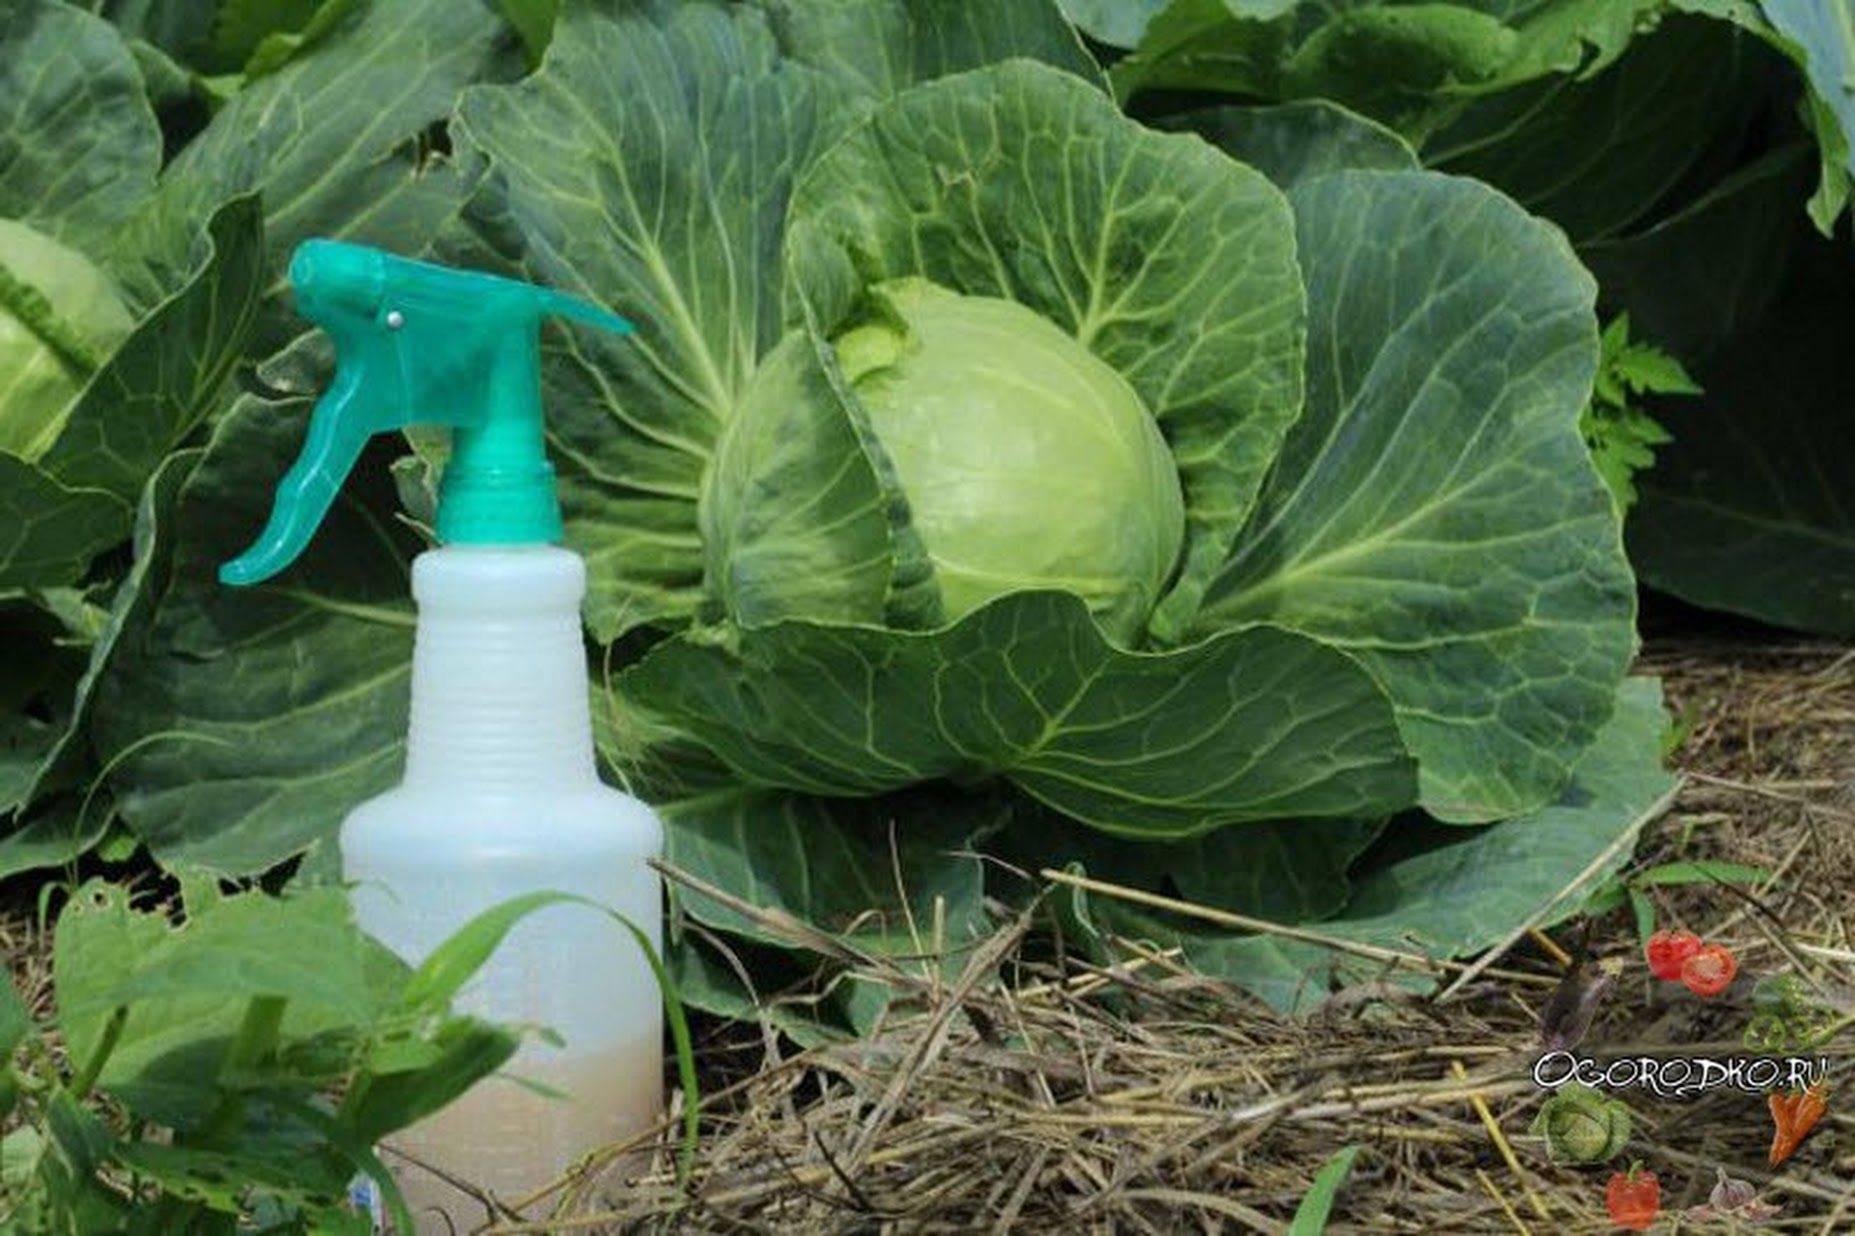 Чем лучше обработать капусту от вредителей, народные, химические и биологические средства